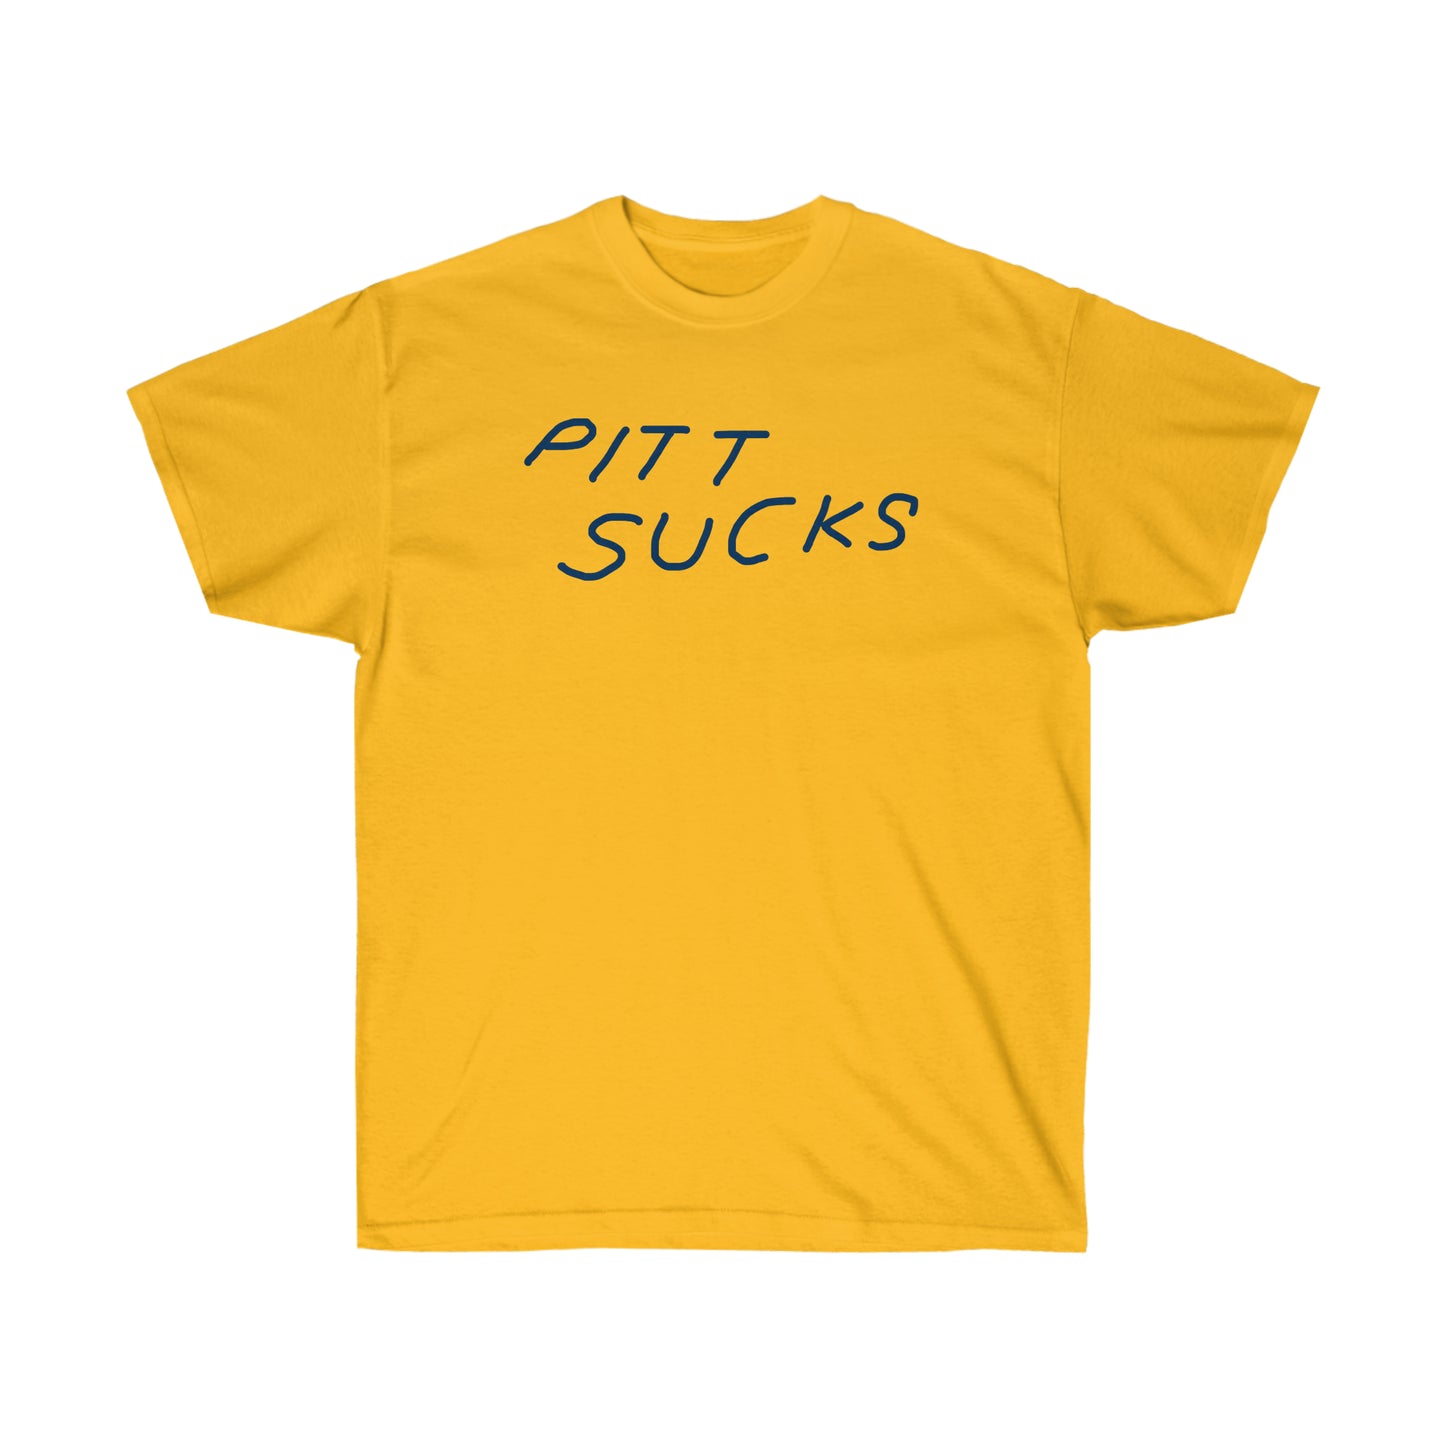 Pitt Sucks Tee